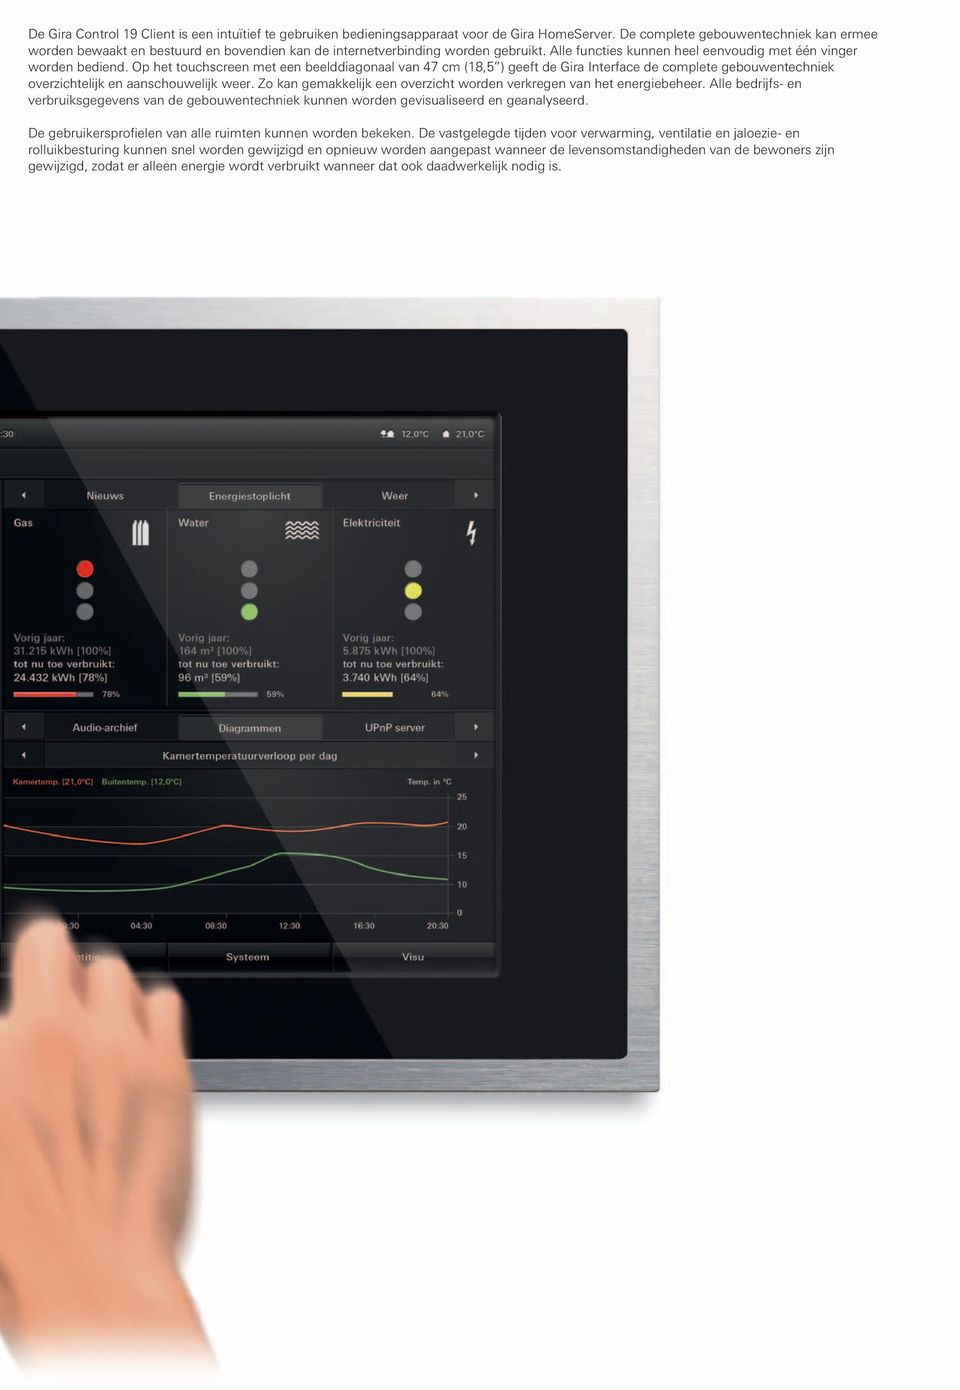 Op het touchscreen met een beelddiagonaal van 47 cm (18,5 ) geeft de Gira Interface de complete gebouwentechniek overzichtelijk en aanschouwelijk weer.